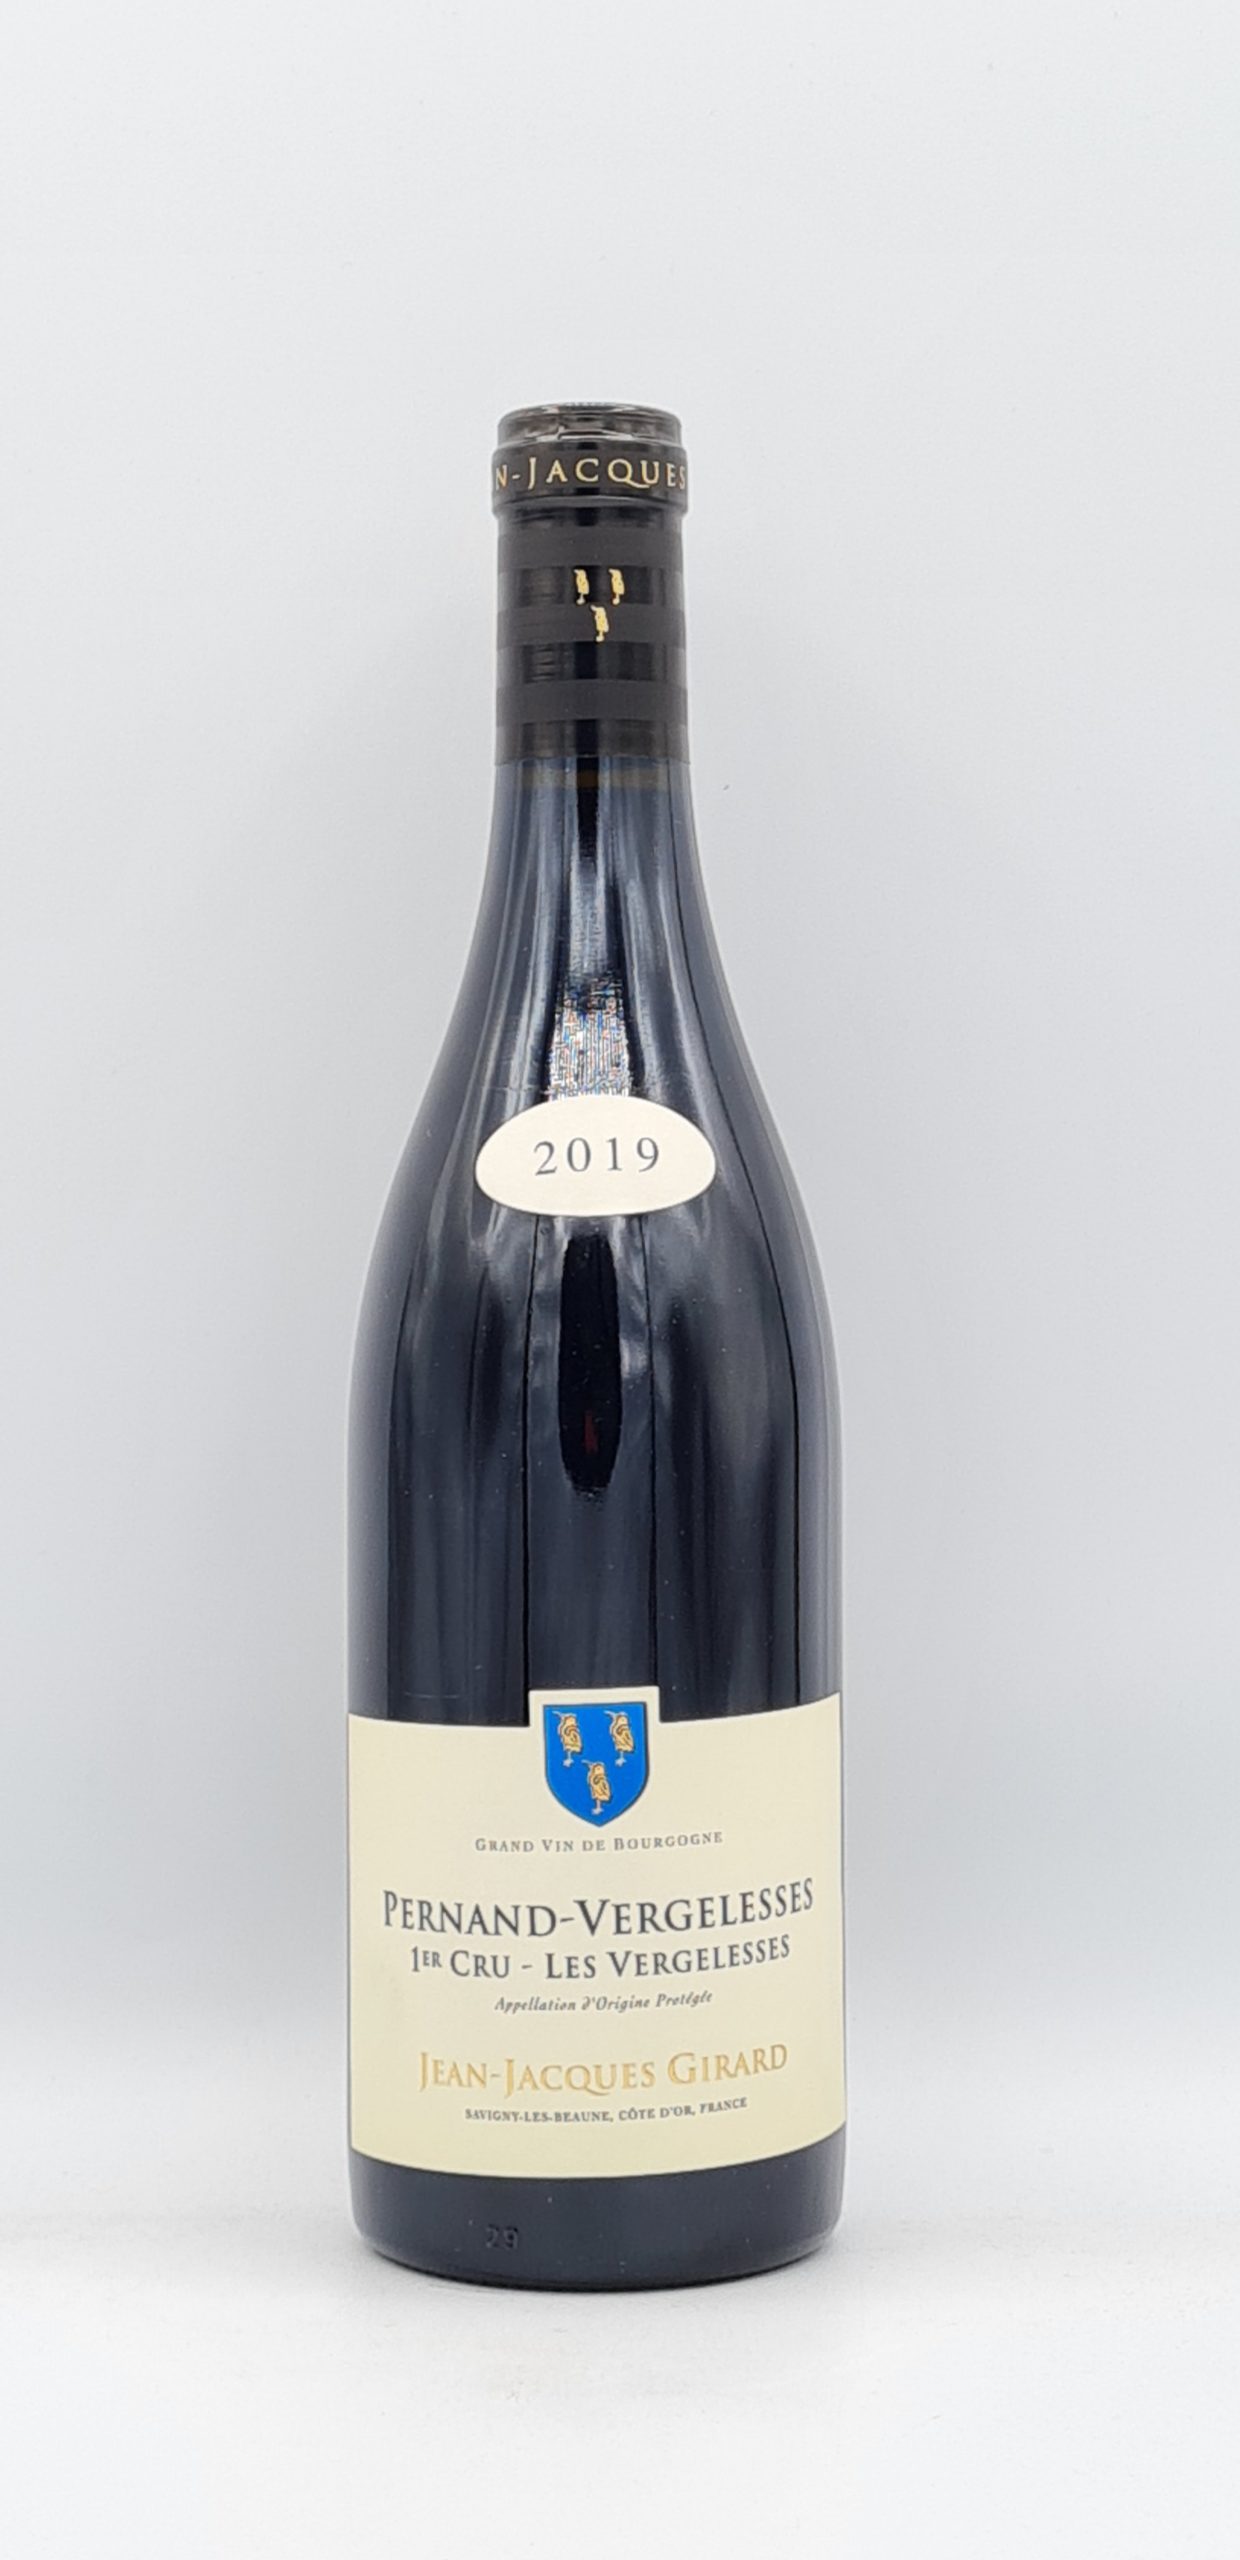 Bourgogne Pernand-Vergelesses 1er cru “Les Vergelesses” 2019 Domaine Girard